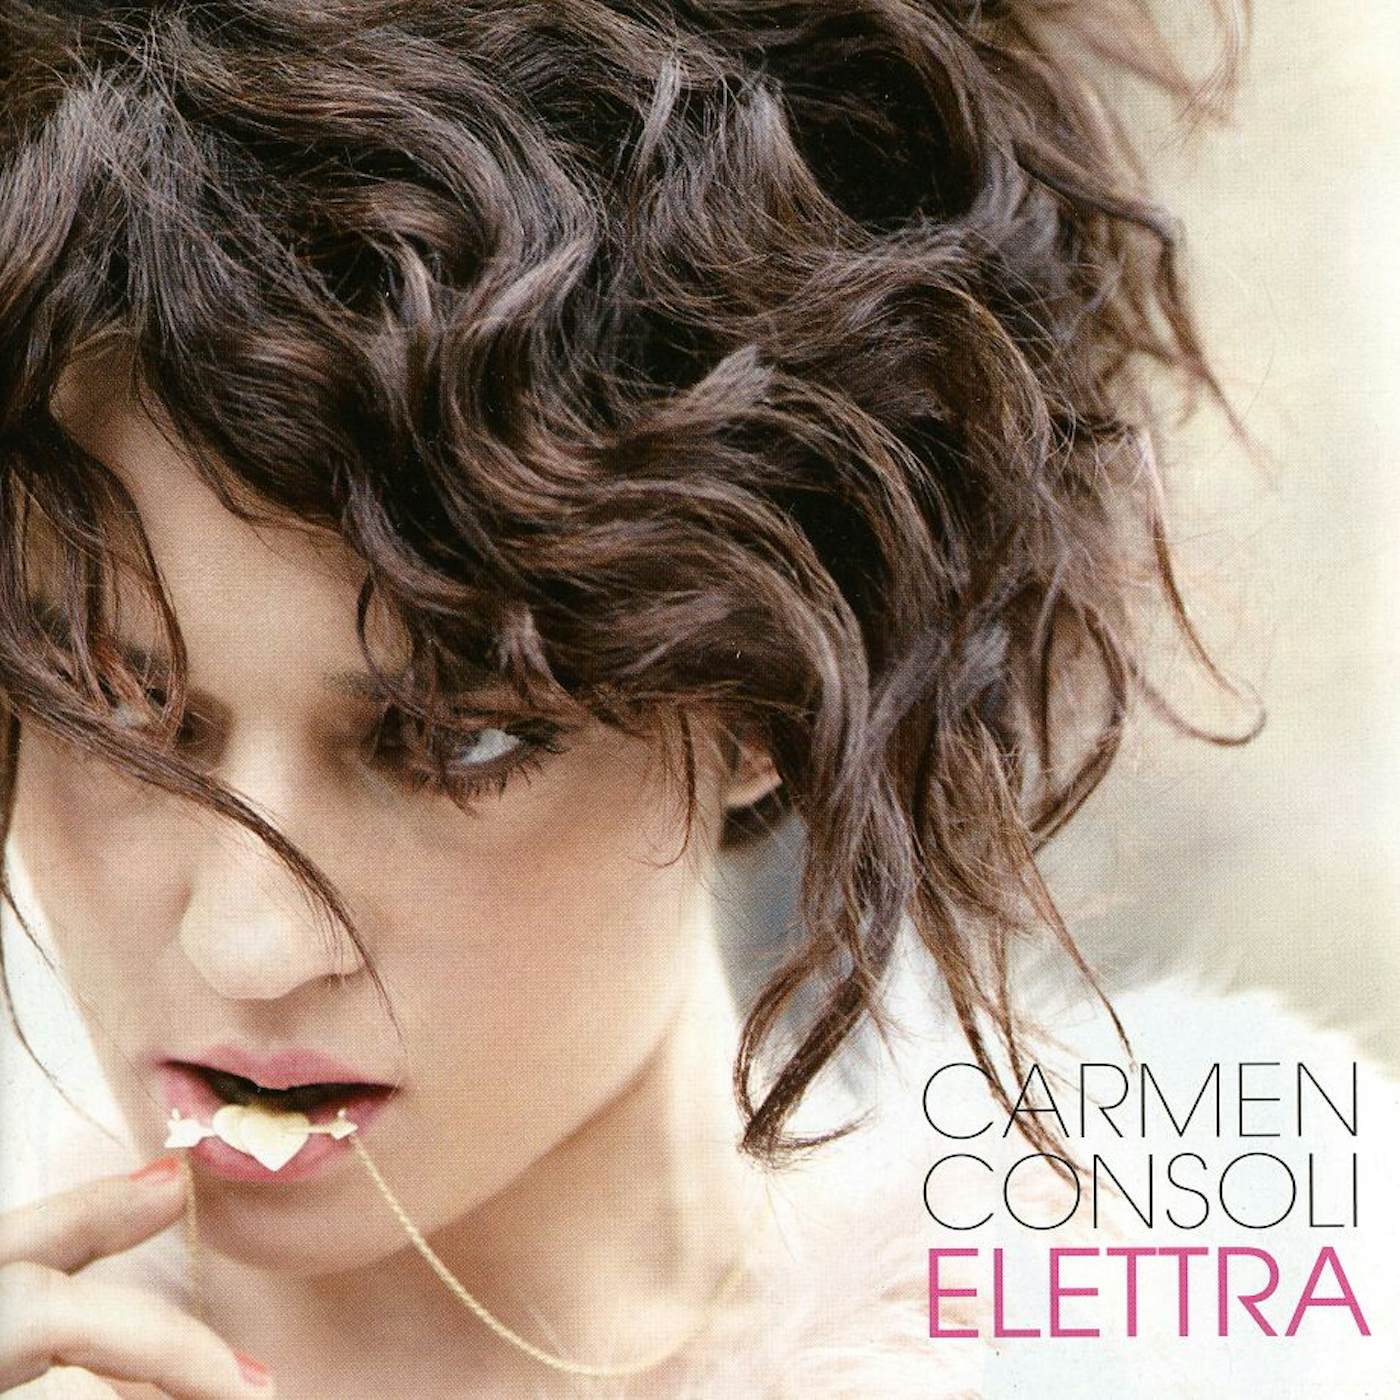 Carmen Consoli ELETTRA CD